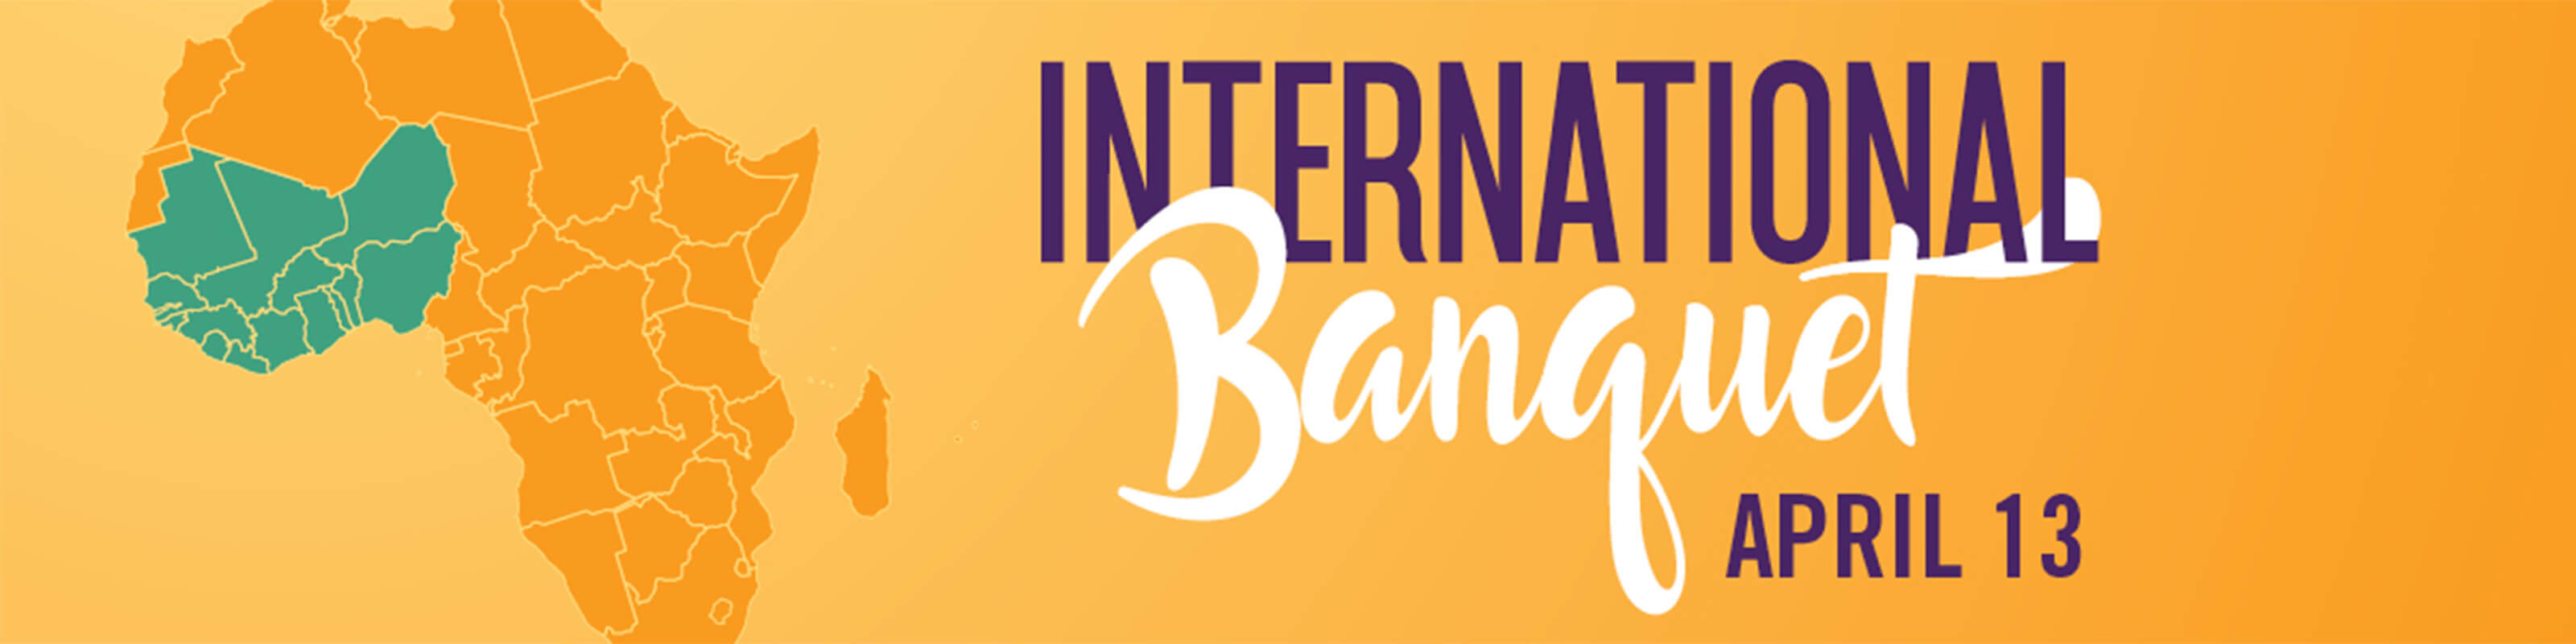 ISSC International Banquet April 13